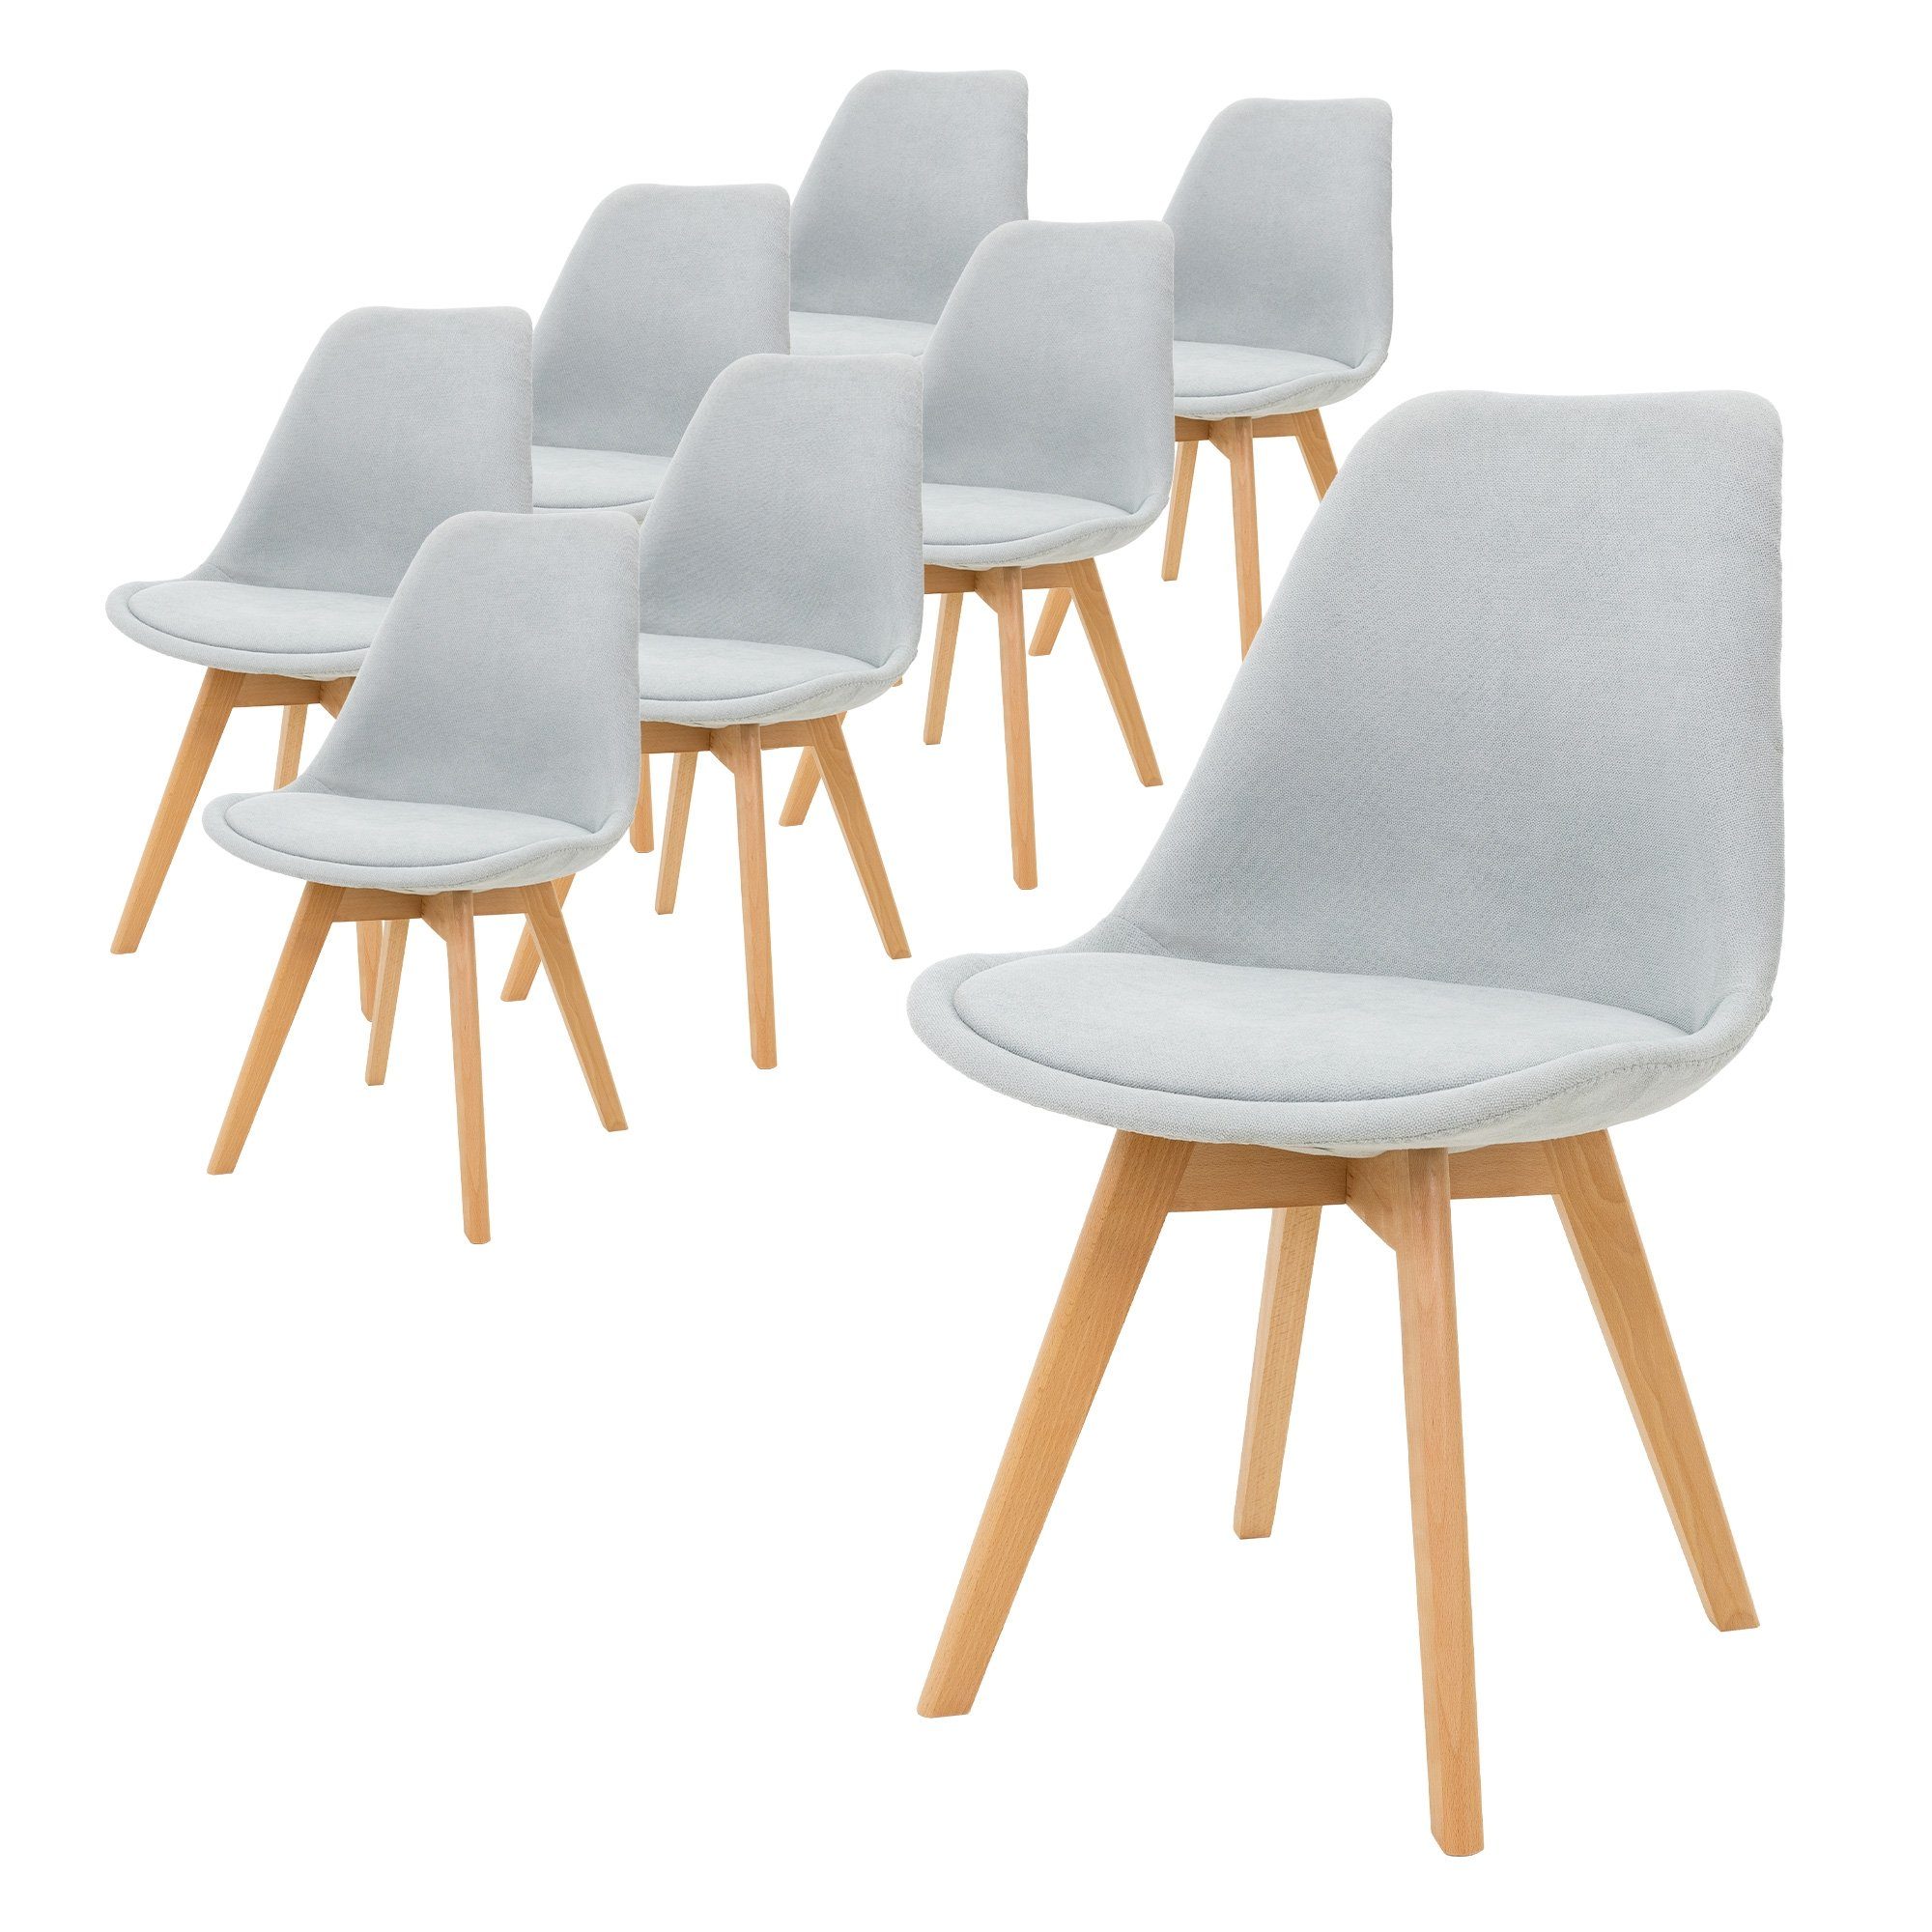 ML-DESIGN Stuhl Esszimmerstühle Polsterstuhl Küchenstuhl Wohnzimmerstühle (8er Set), 8er Set Grau Retro Buchenholz-Beinen Sitzfläche aus Leinen ergonomisch